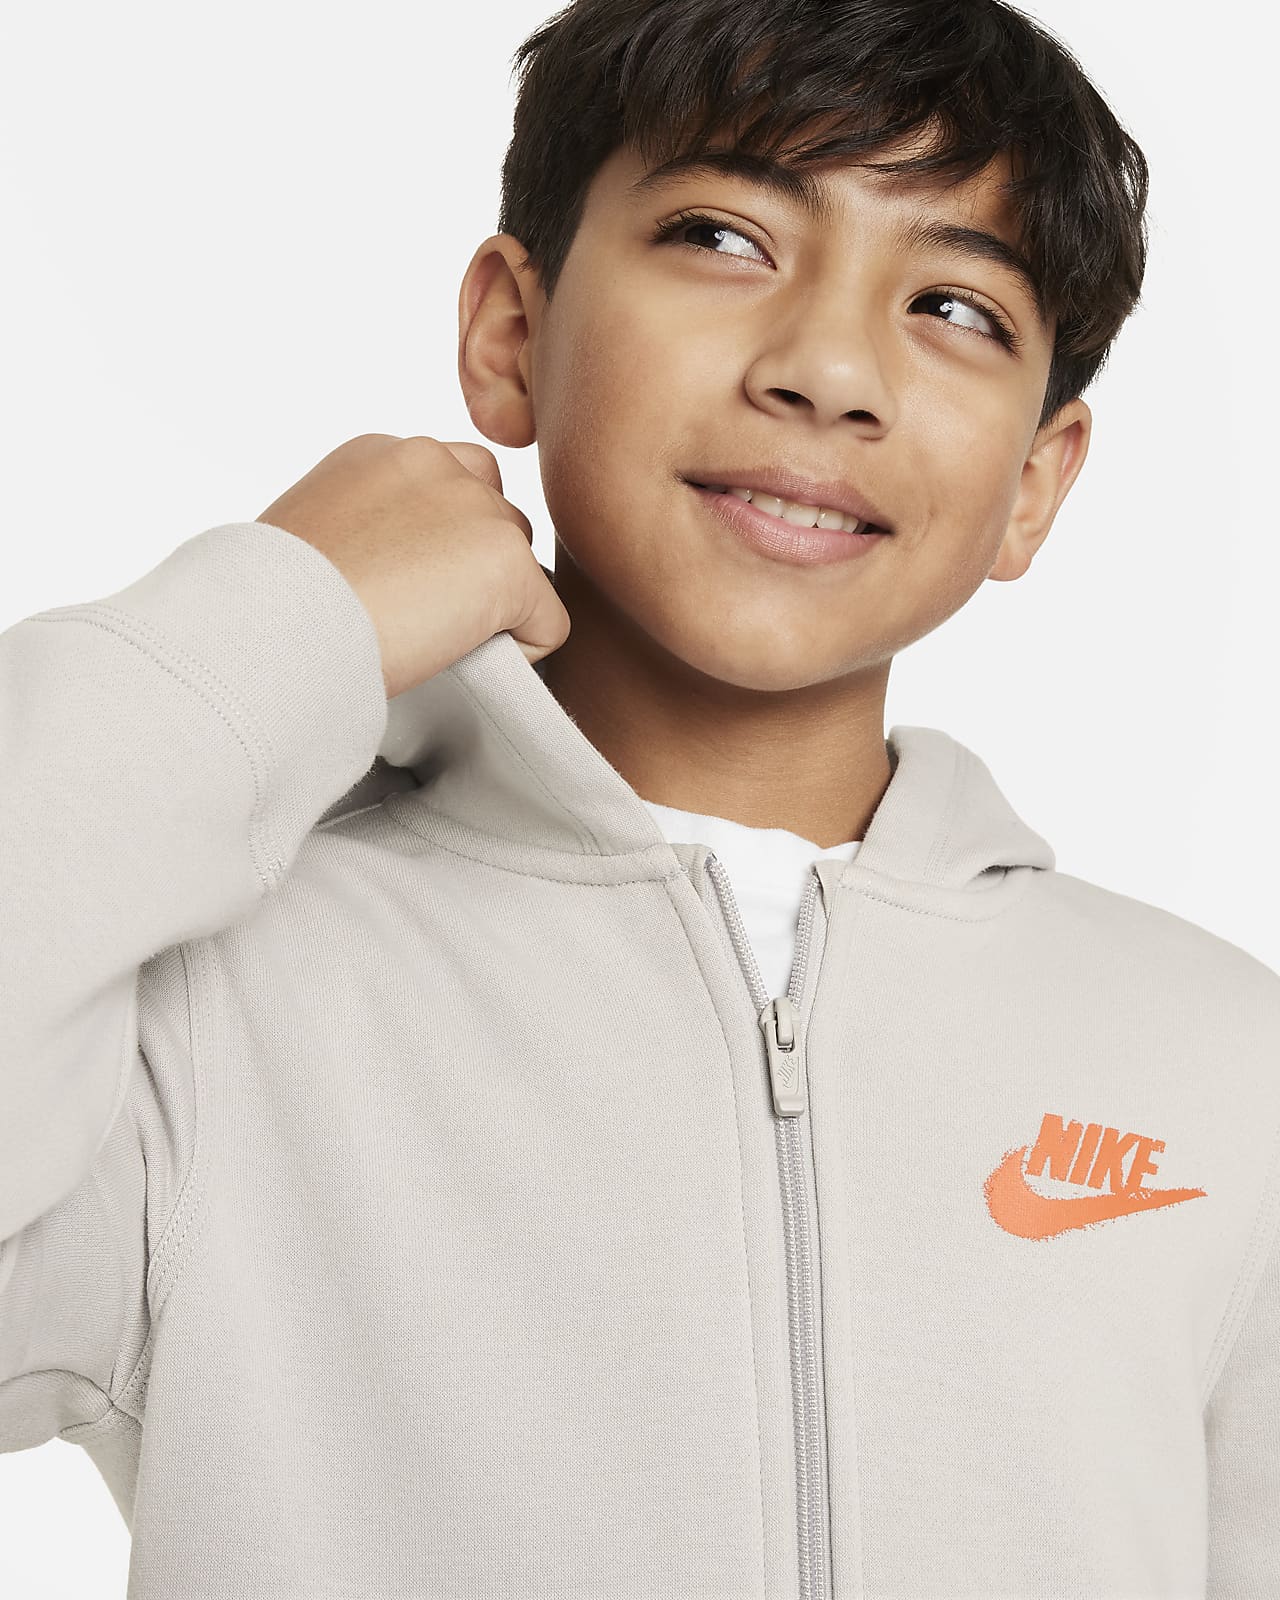 CH für durchgehendem Nike Hoodie Nike (Jungen). Grafikdetail Kinder Sportswear ältere und Reißverschluss mit